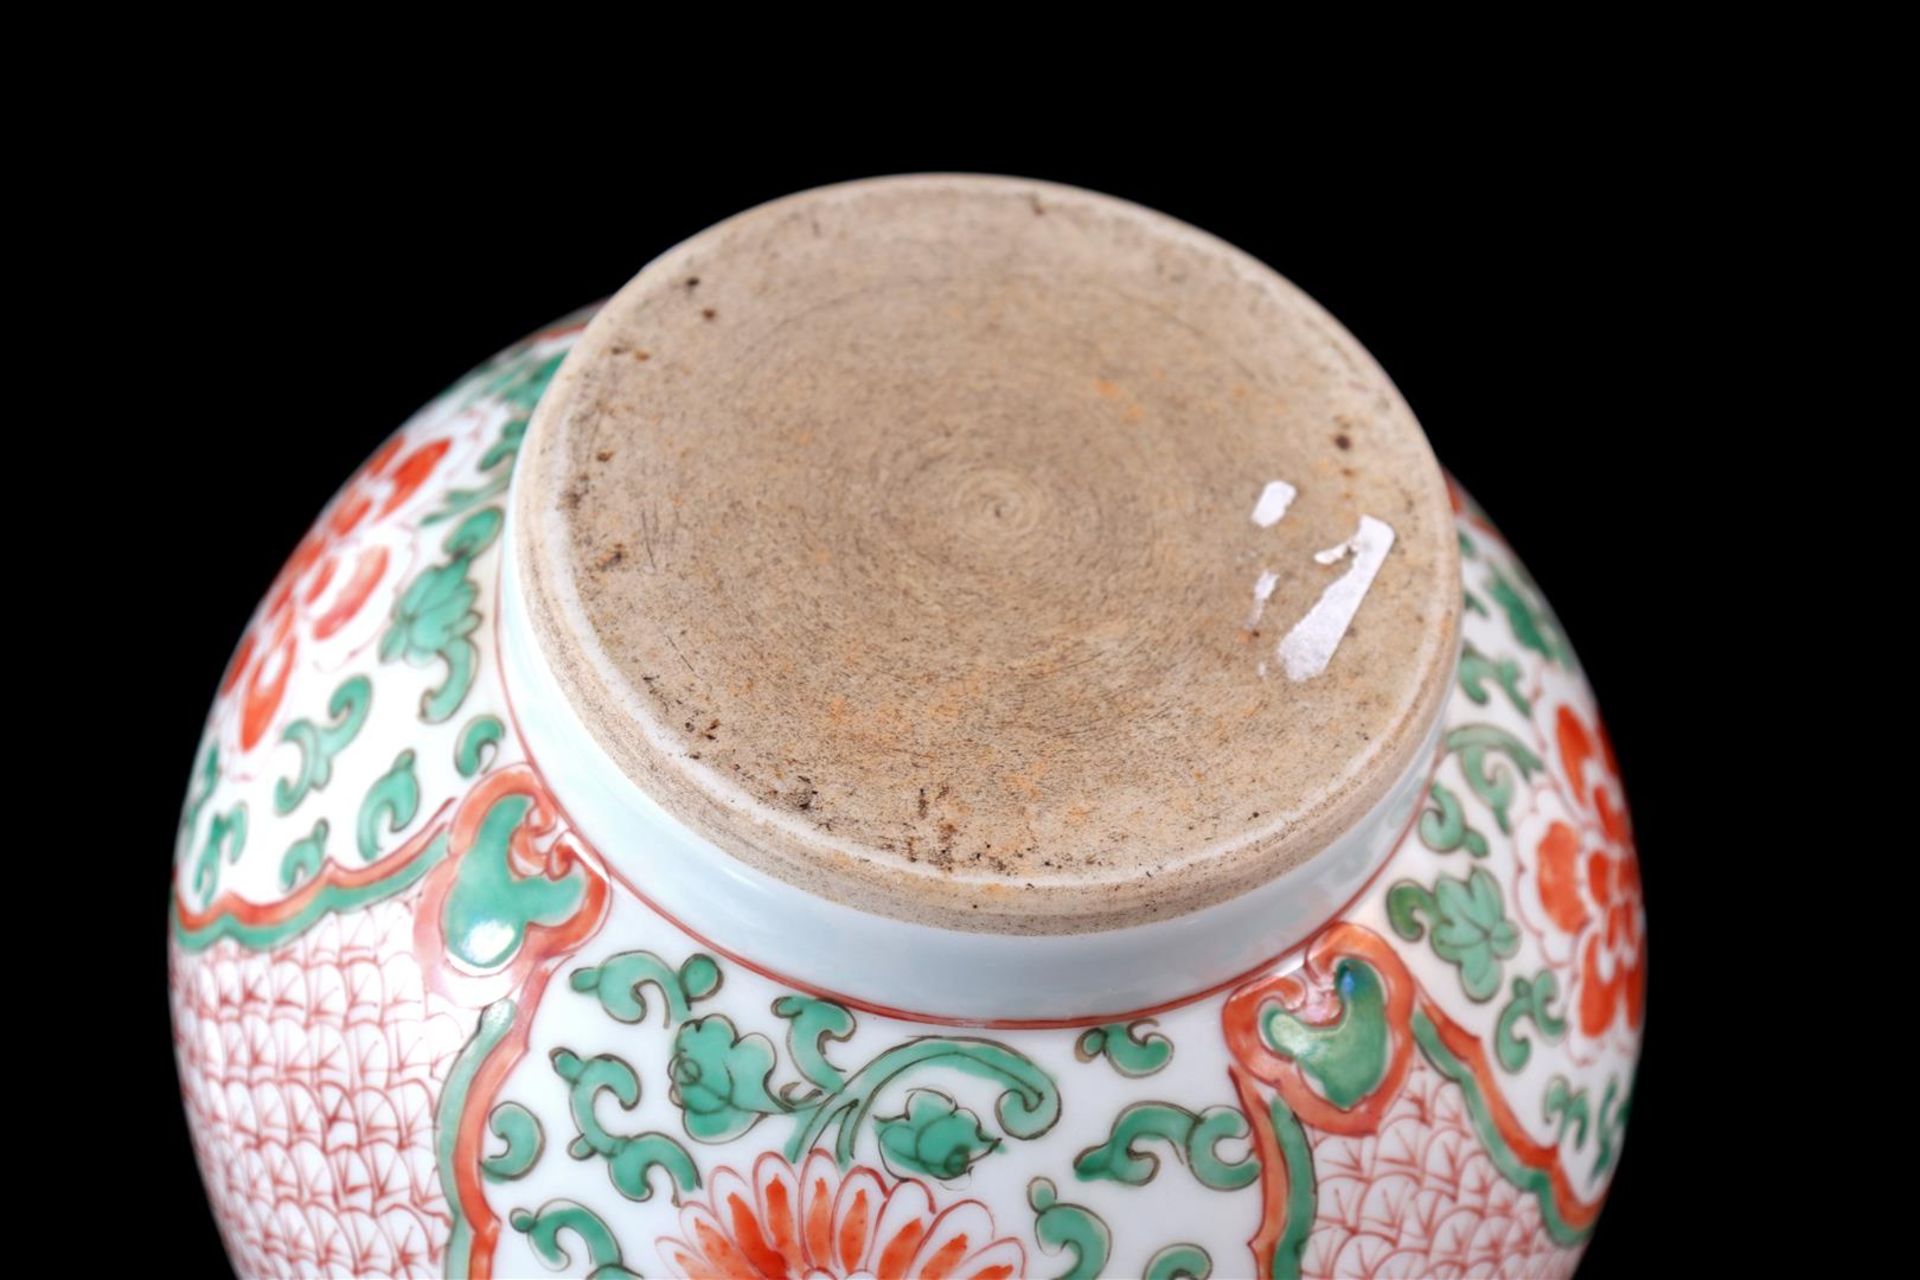 Porcelain vase - Image 2 of 2